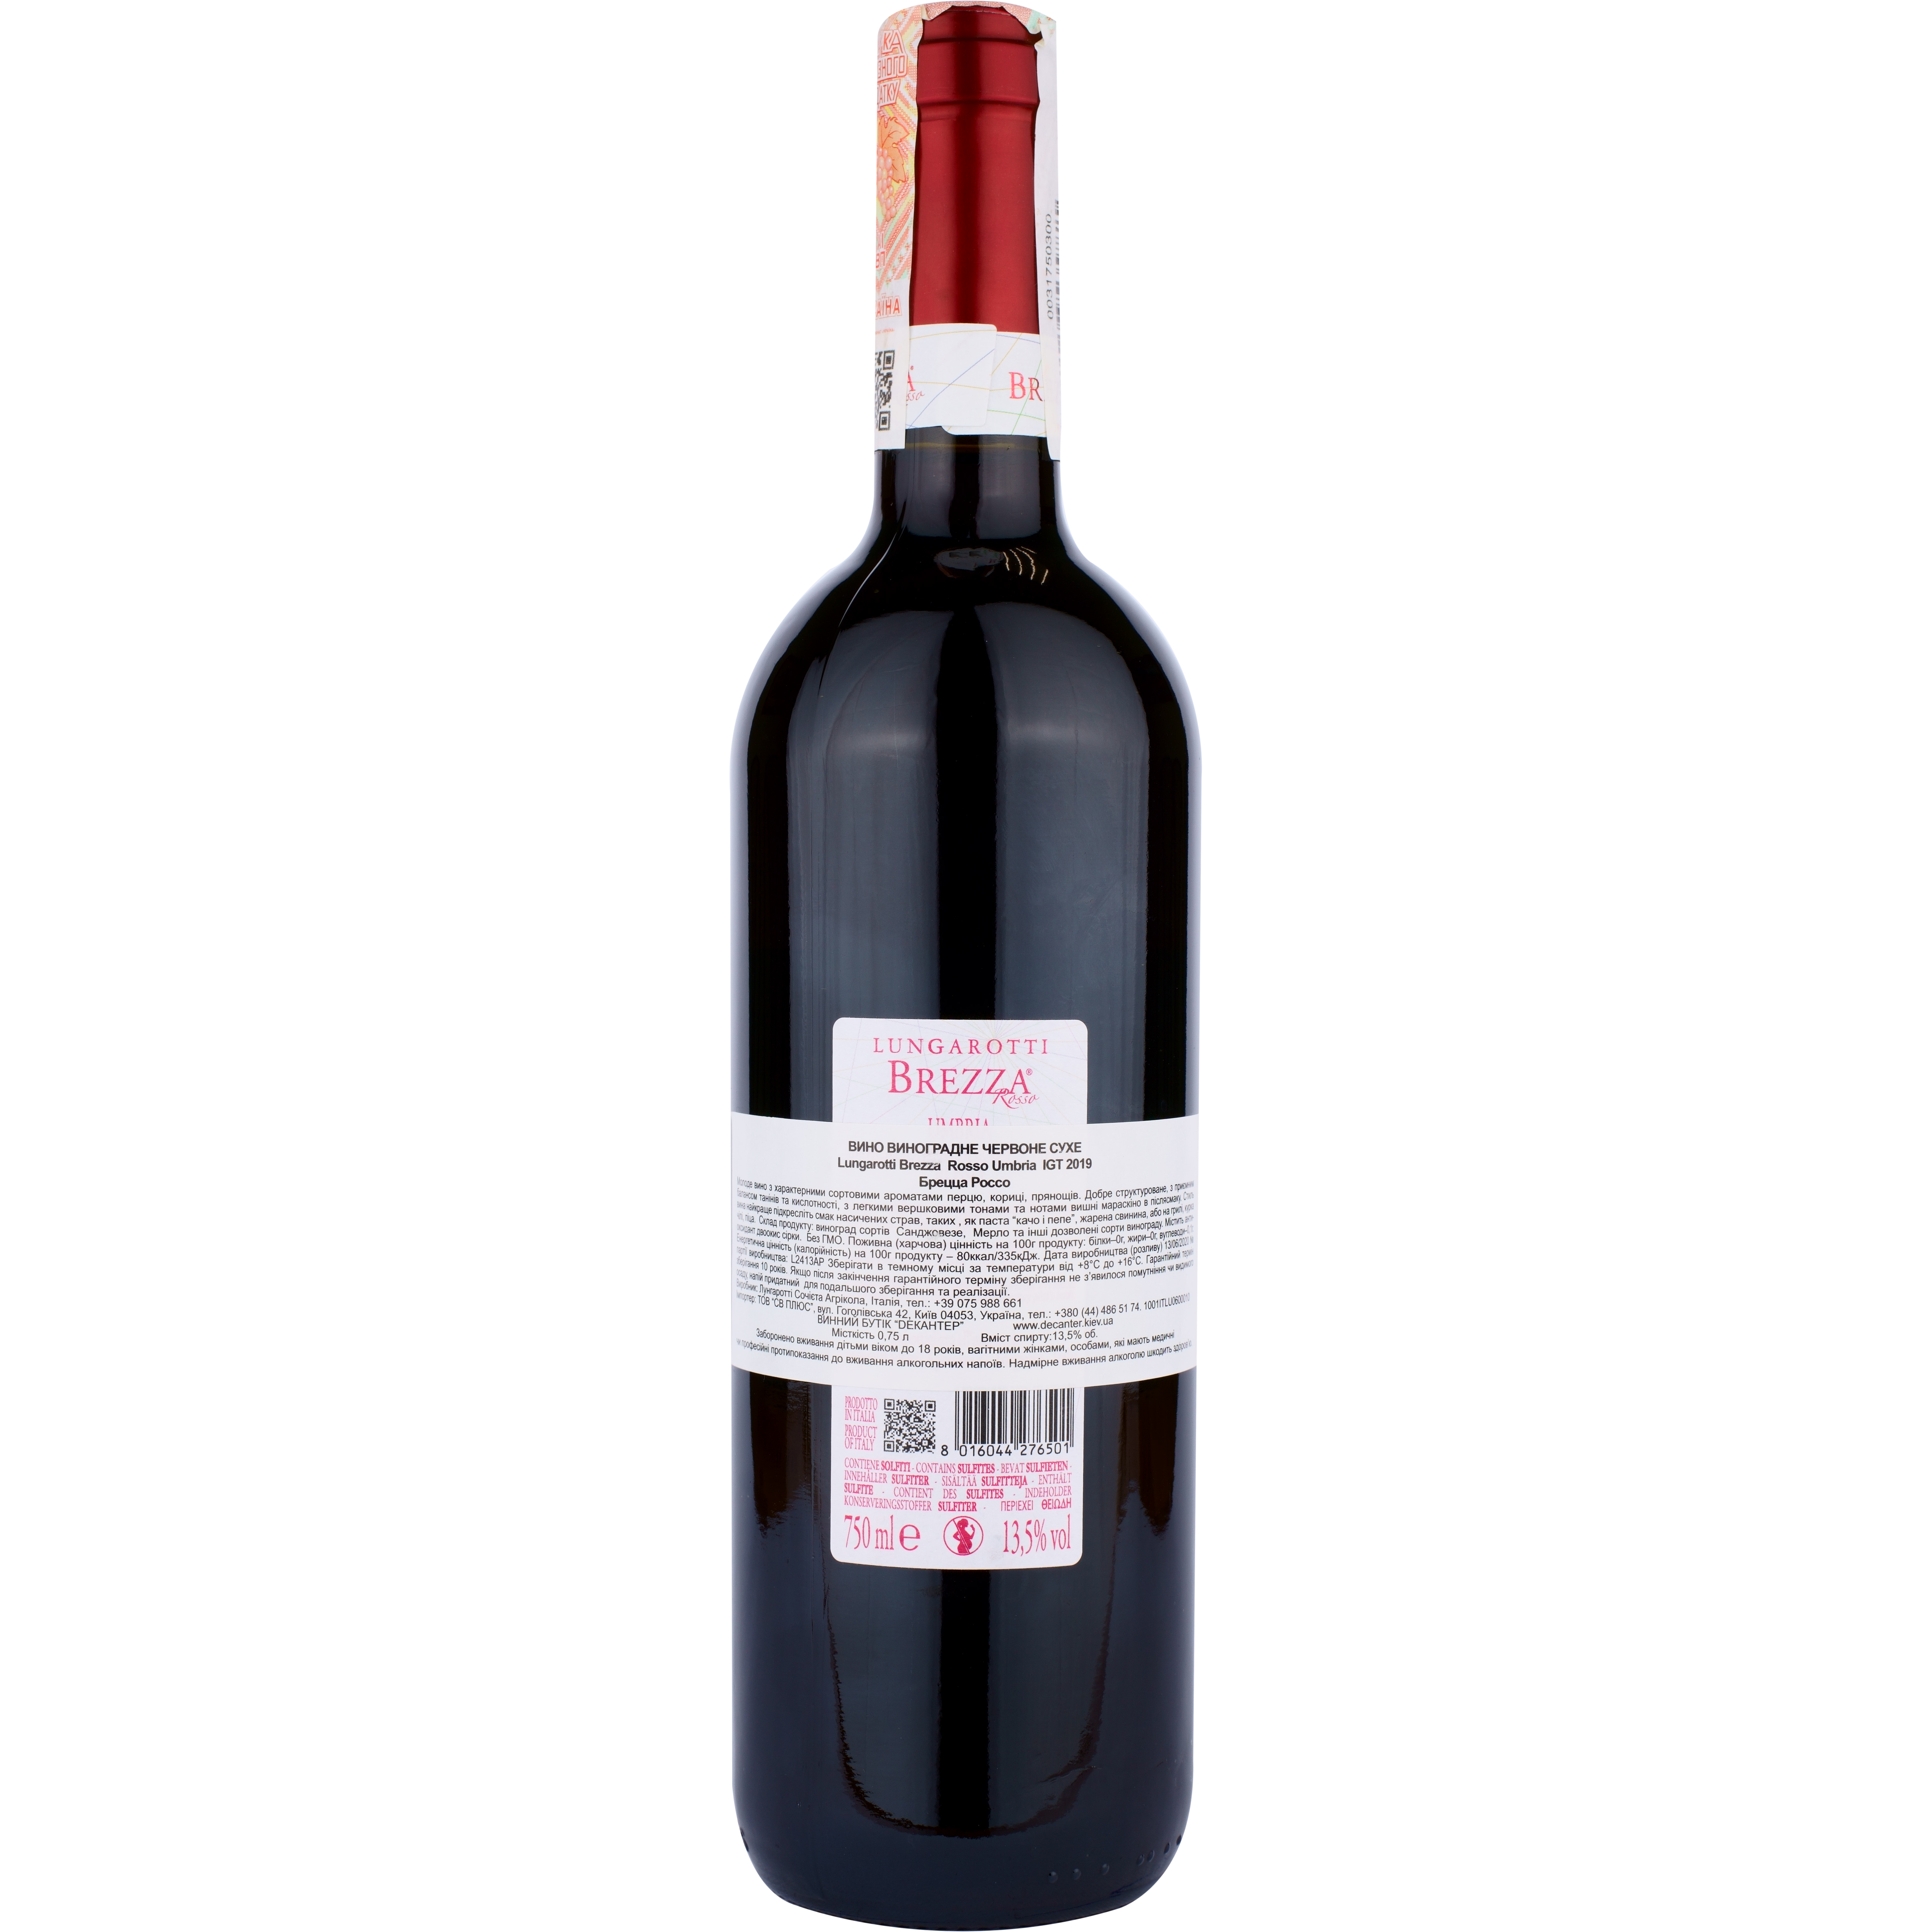 Вино Lungarotti Brezza Rosso IGT, красное, сухое, 12%, 0,75 л - фото 2